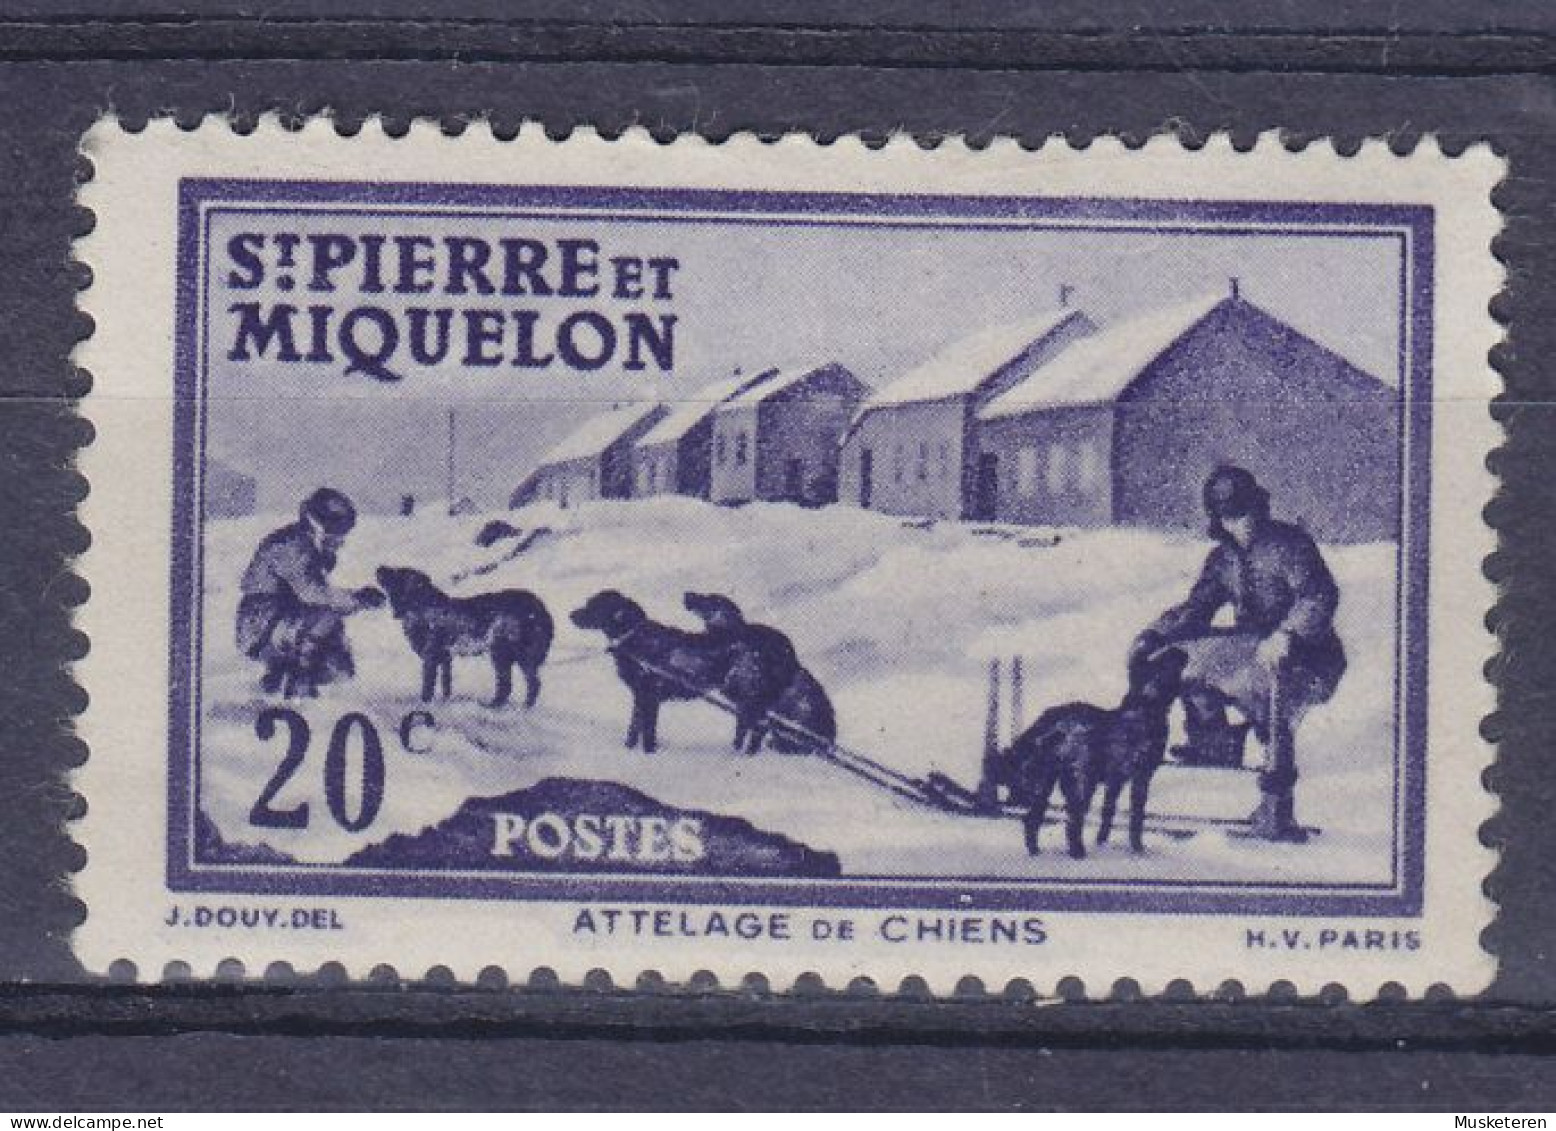 Saint-Pierre & Miquelon 1938 Mi. 176,  20c. Hundegespann Attelage Du Chiens, MH* - Unused Stamps